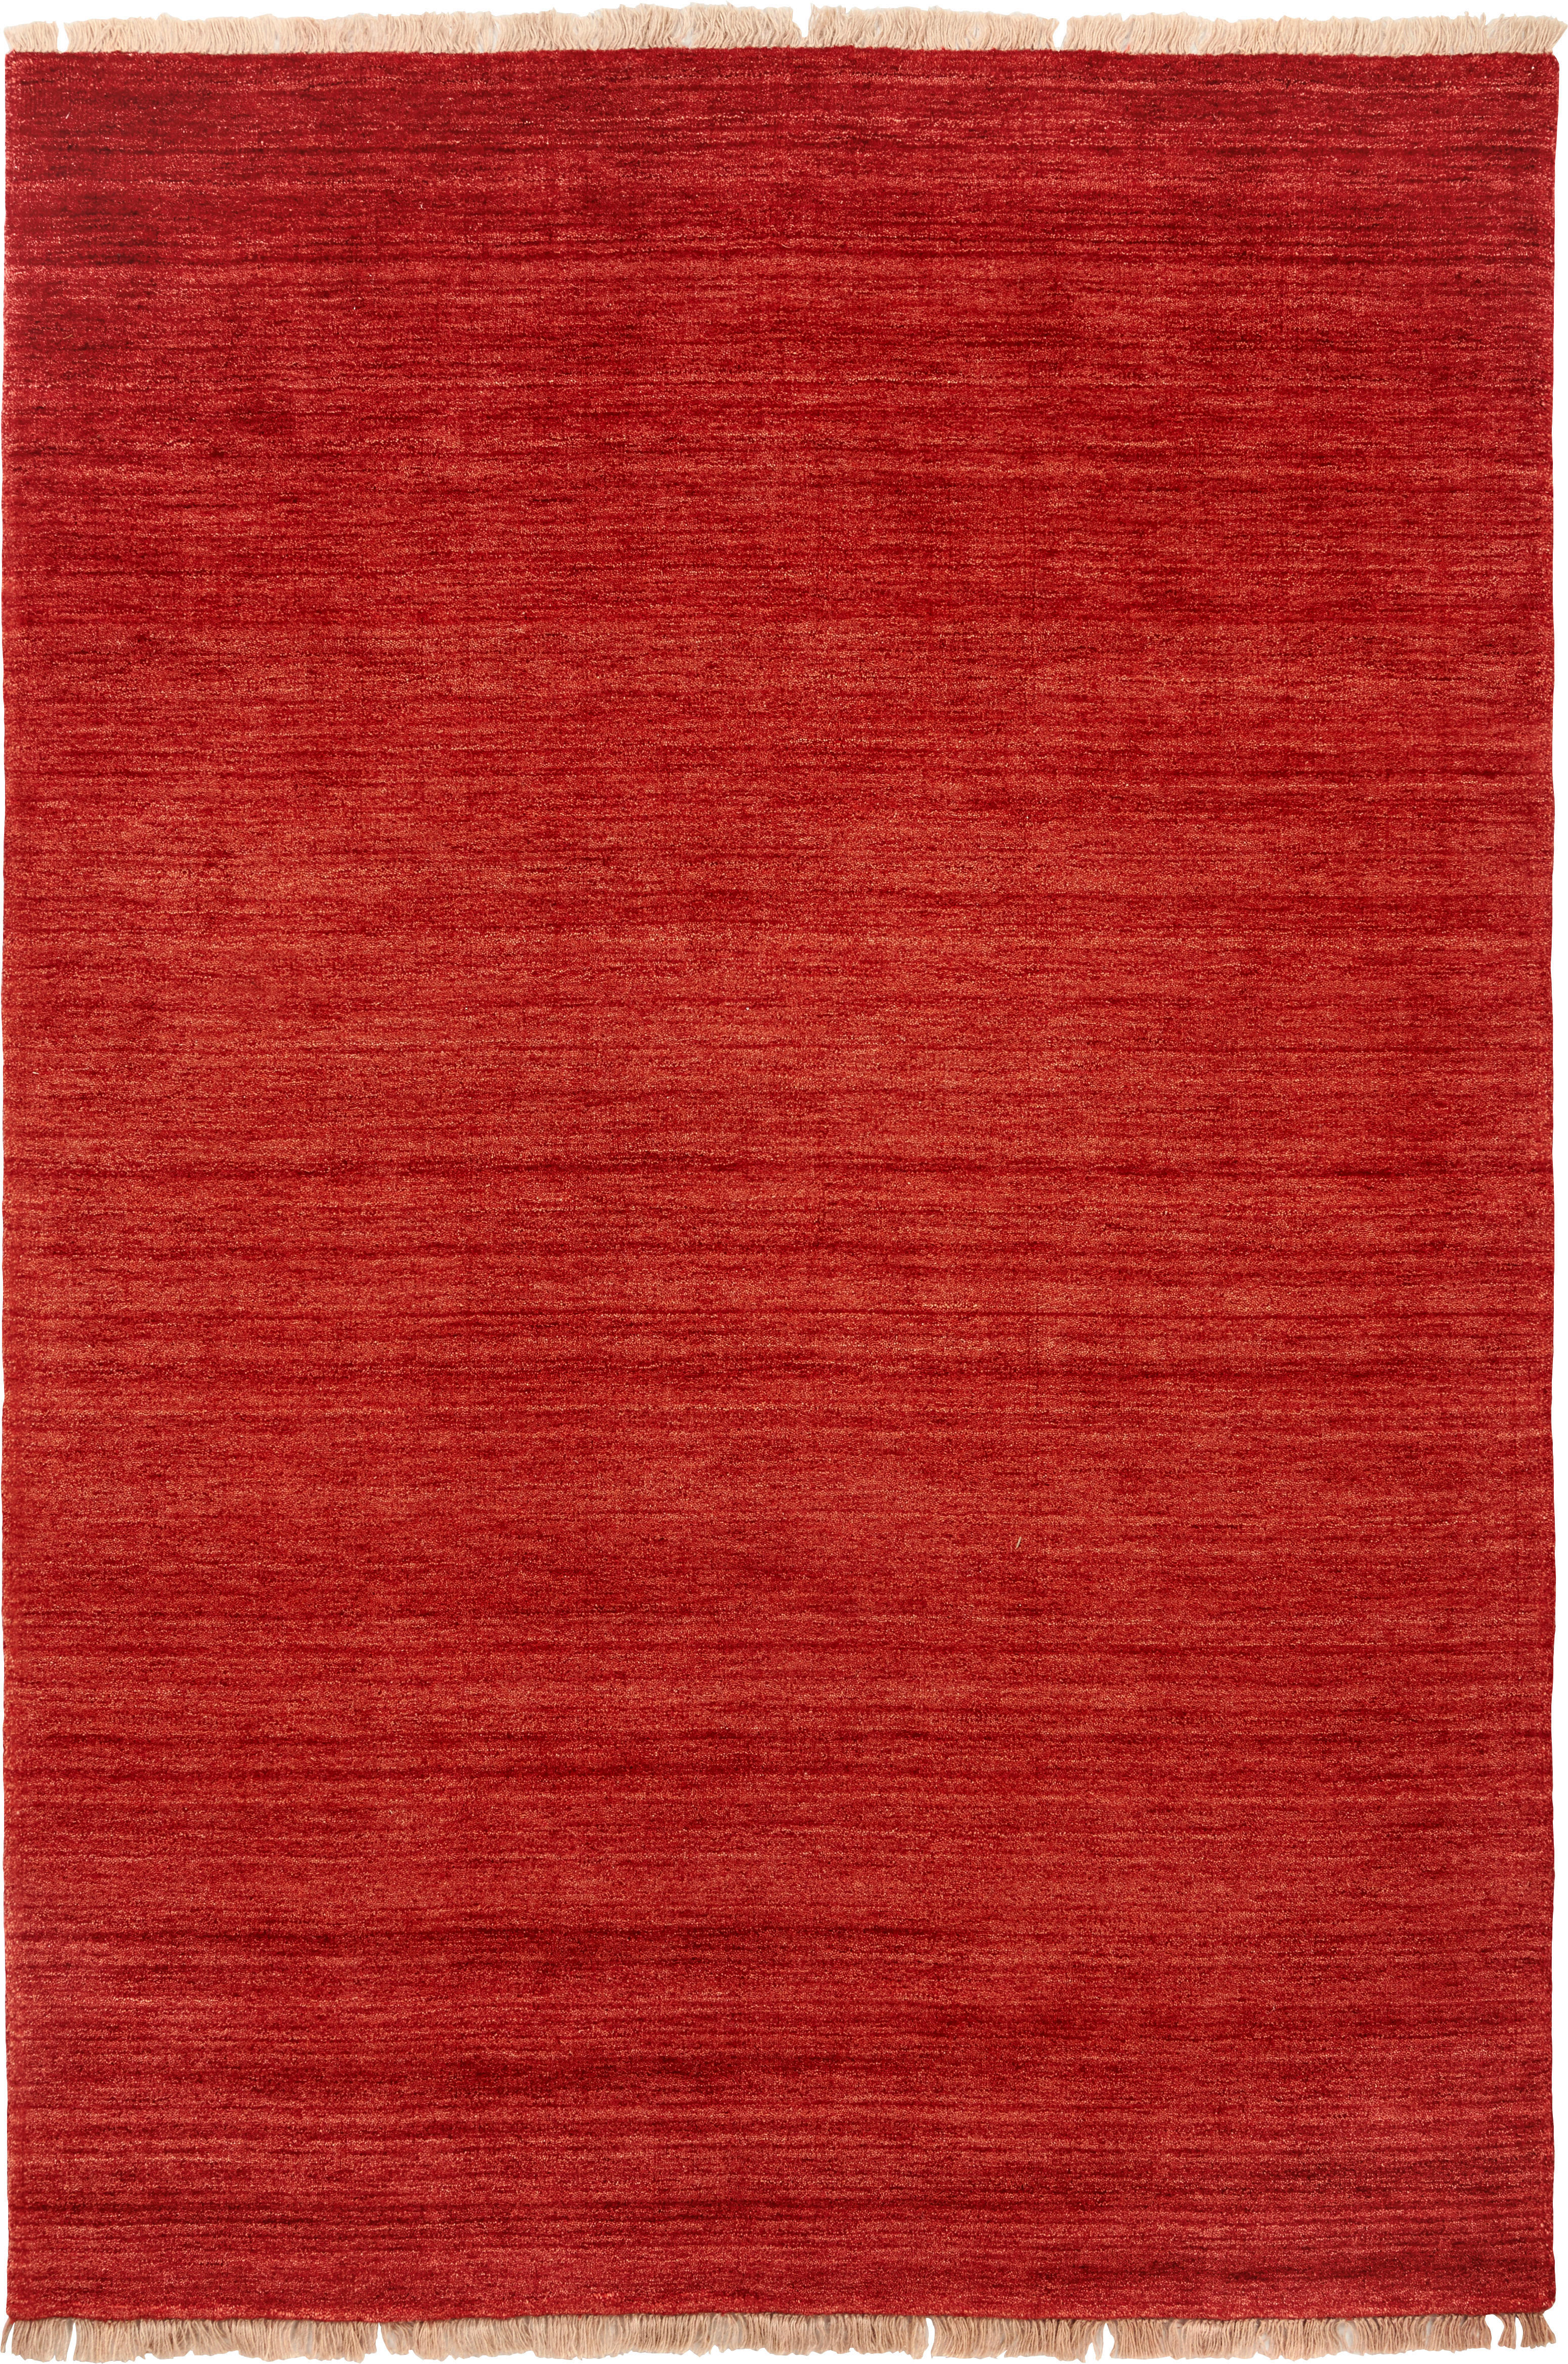 ORIENTTEPPICH Alkatif Nomad   - Rot, KONVENTIONELL, Textil (60/90cm) - Cazaris